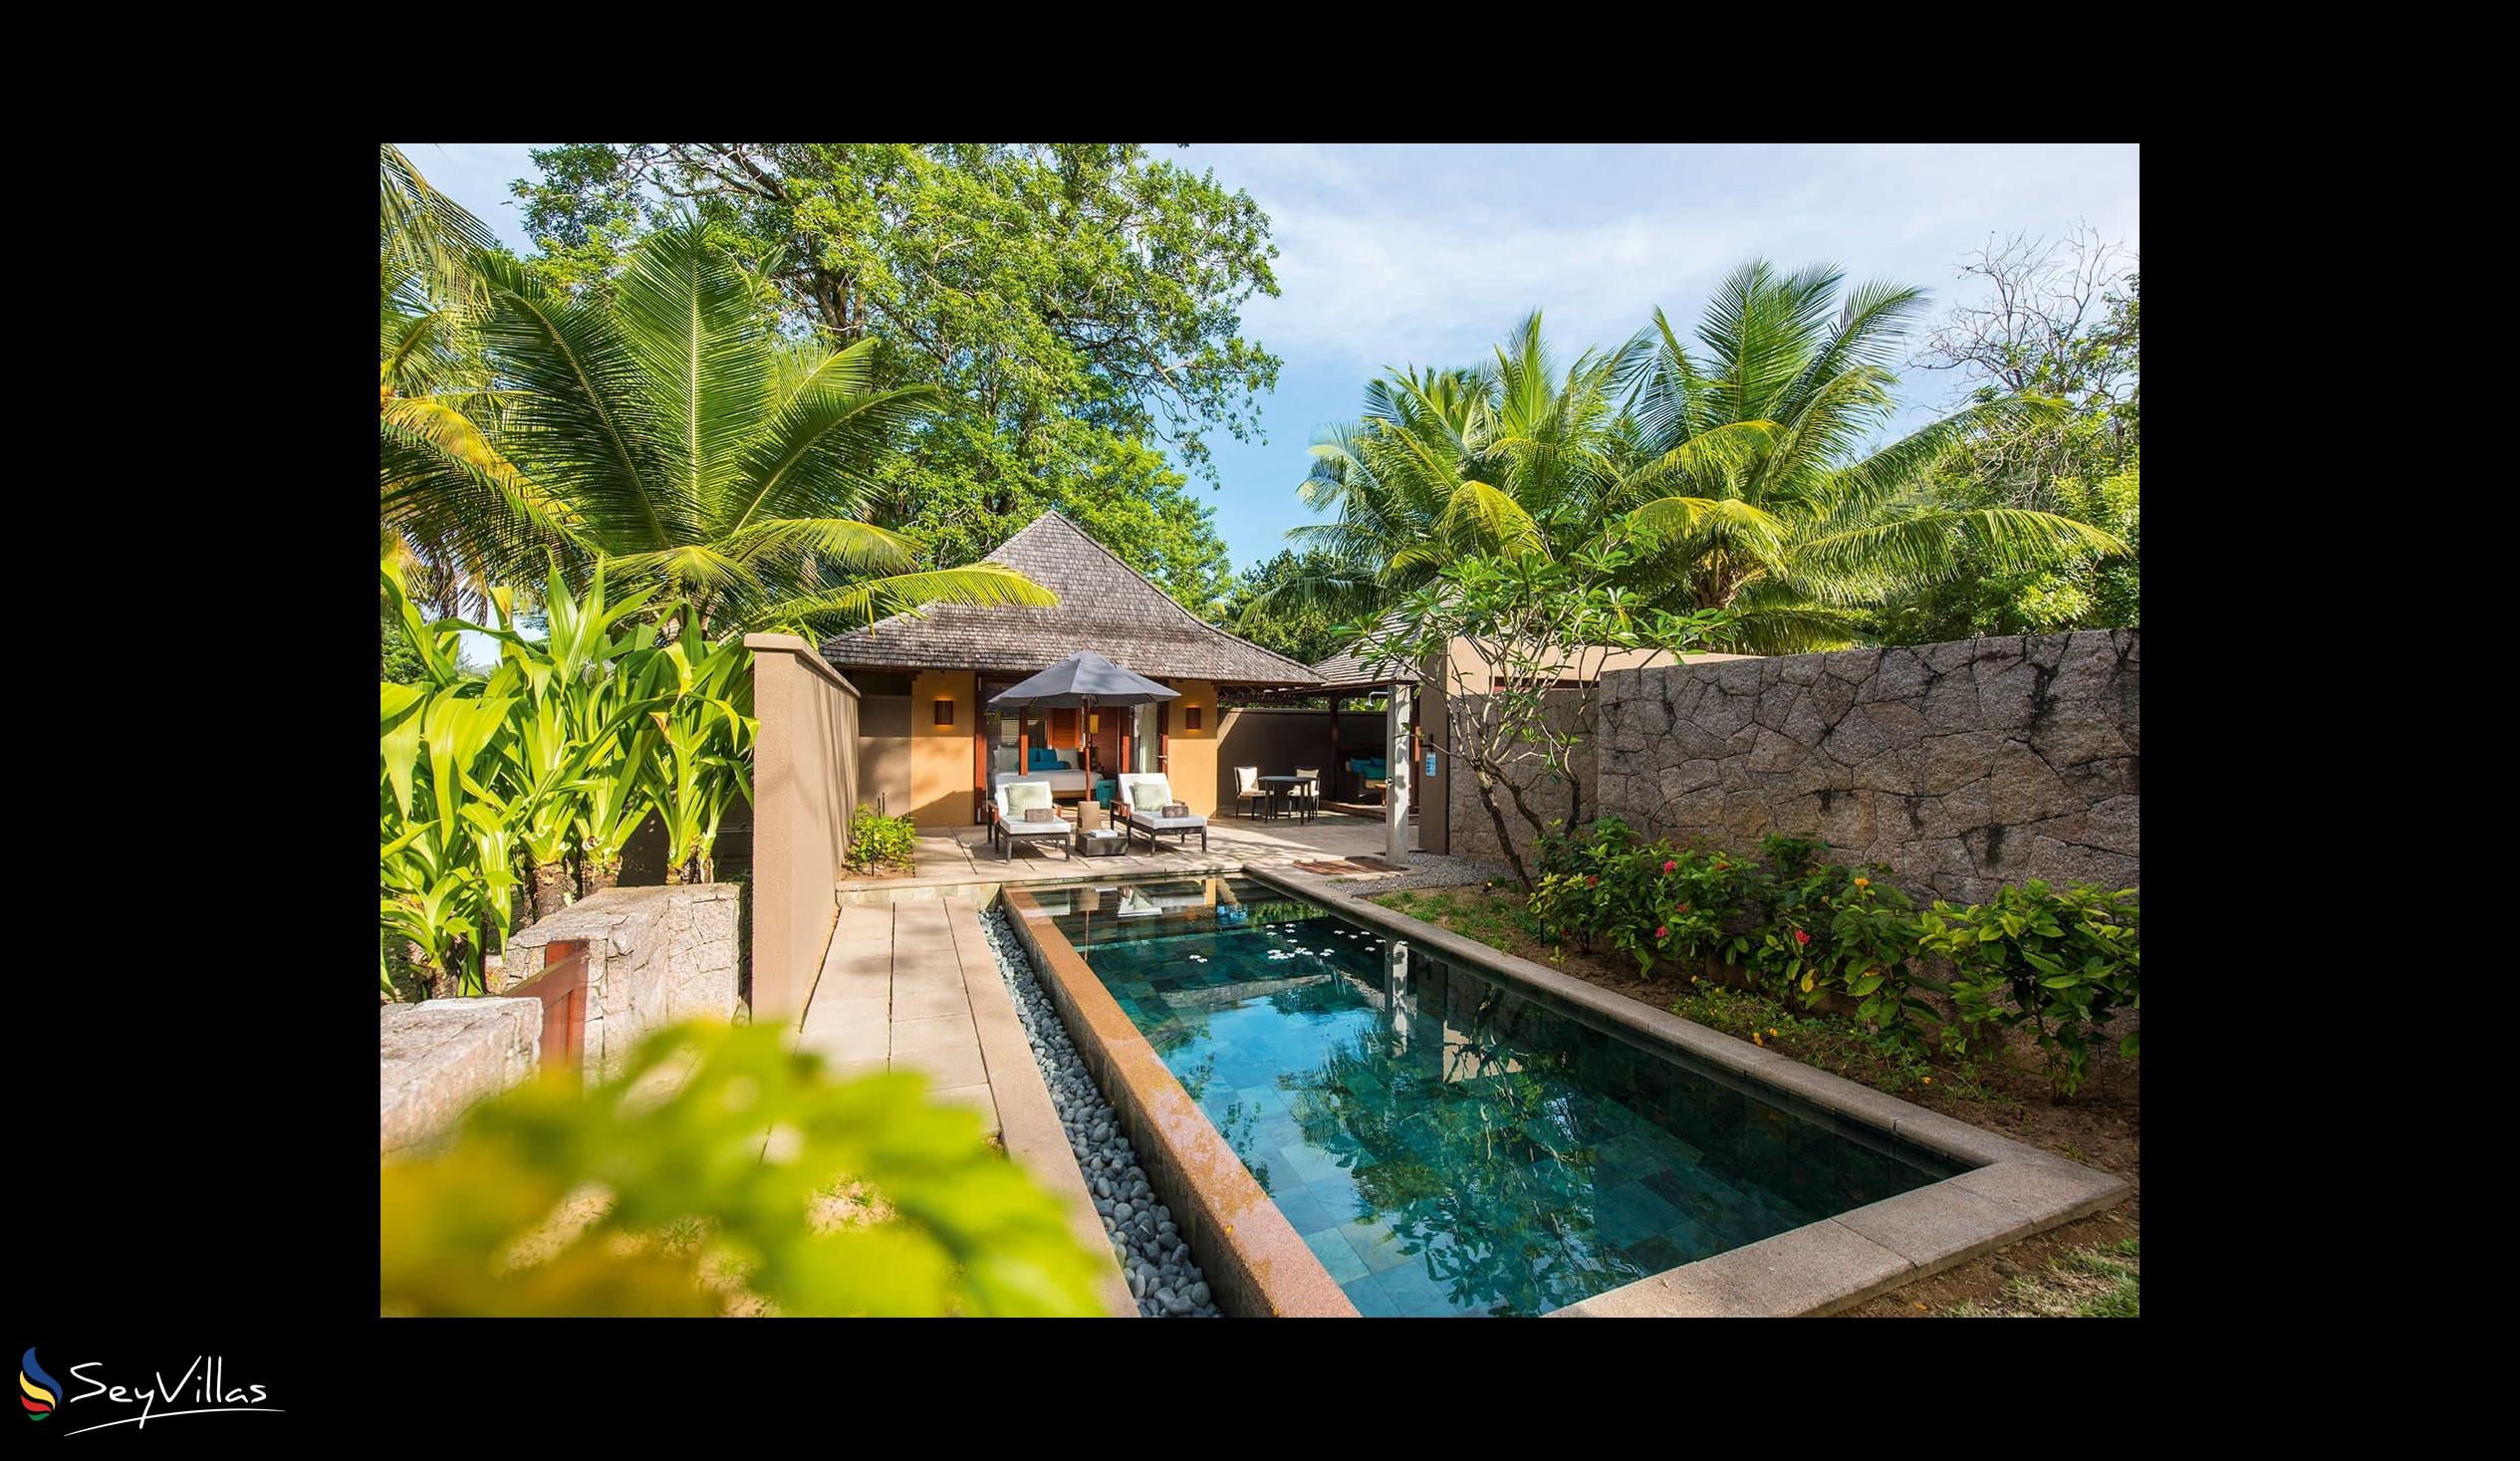 Foto 32: Constance Ephelia Seychelles - Villa de plage 2 chambres - Mahé (Seychelles)